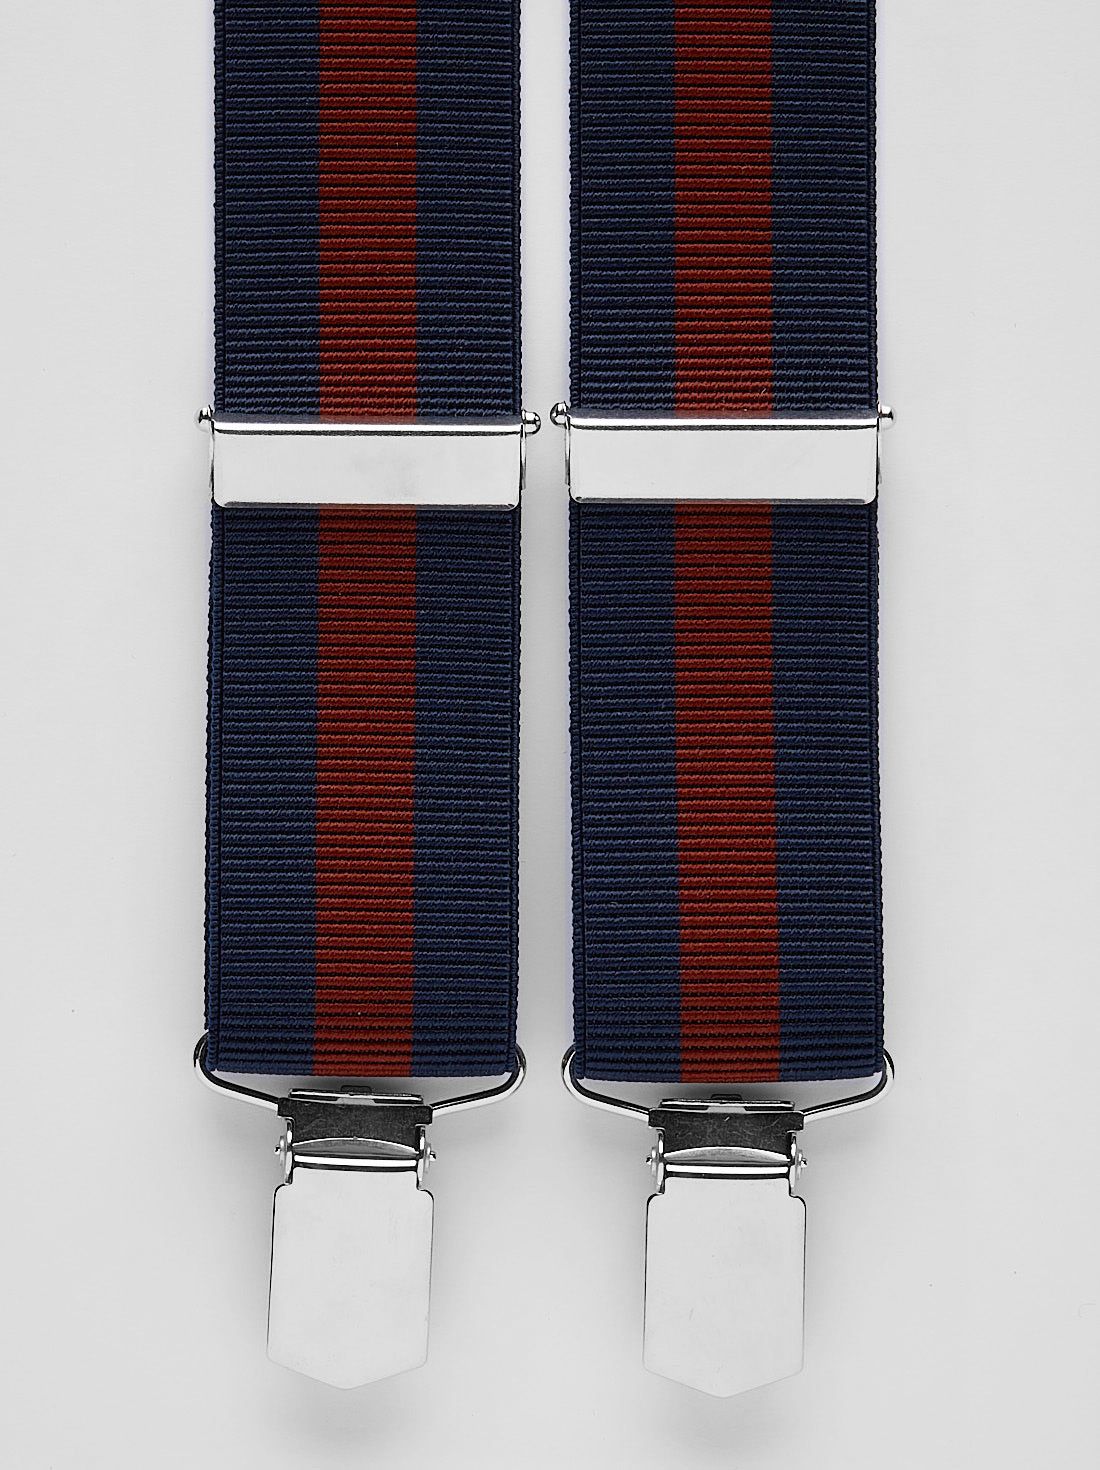 Burgundy Striped Suspenders